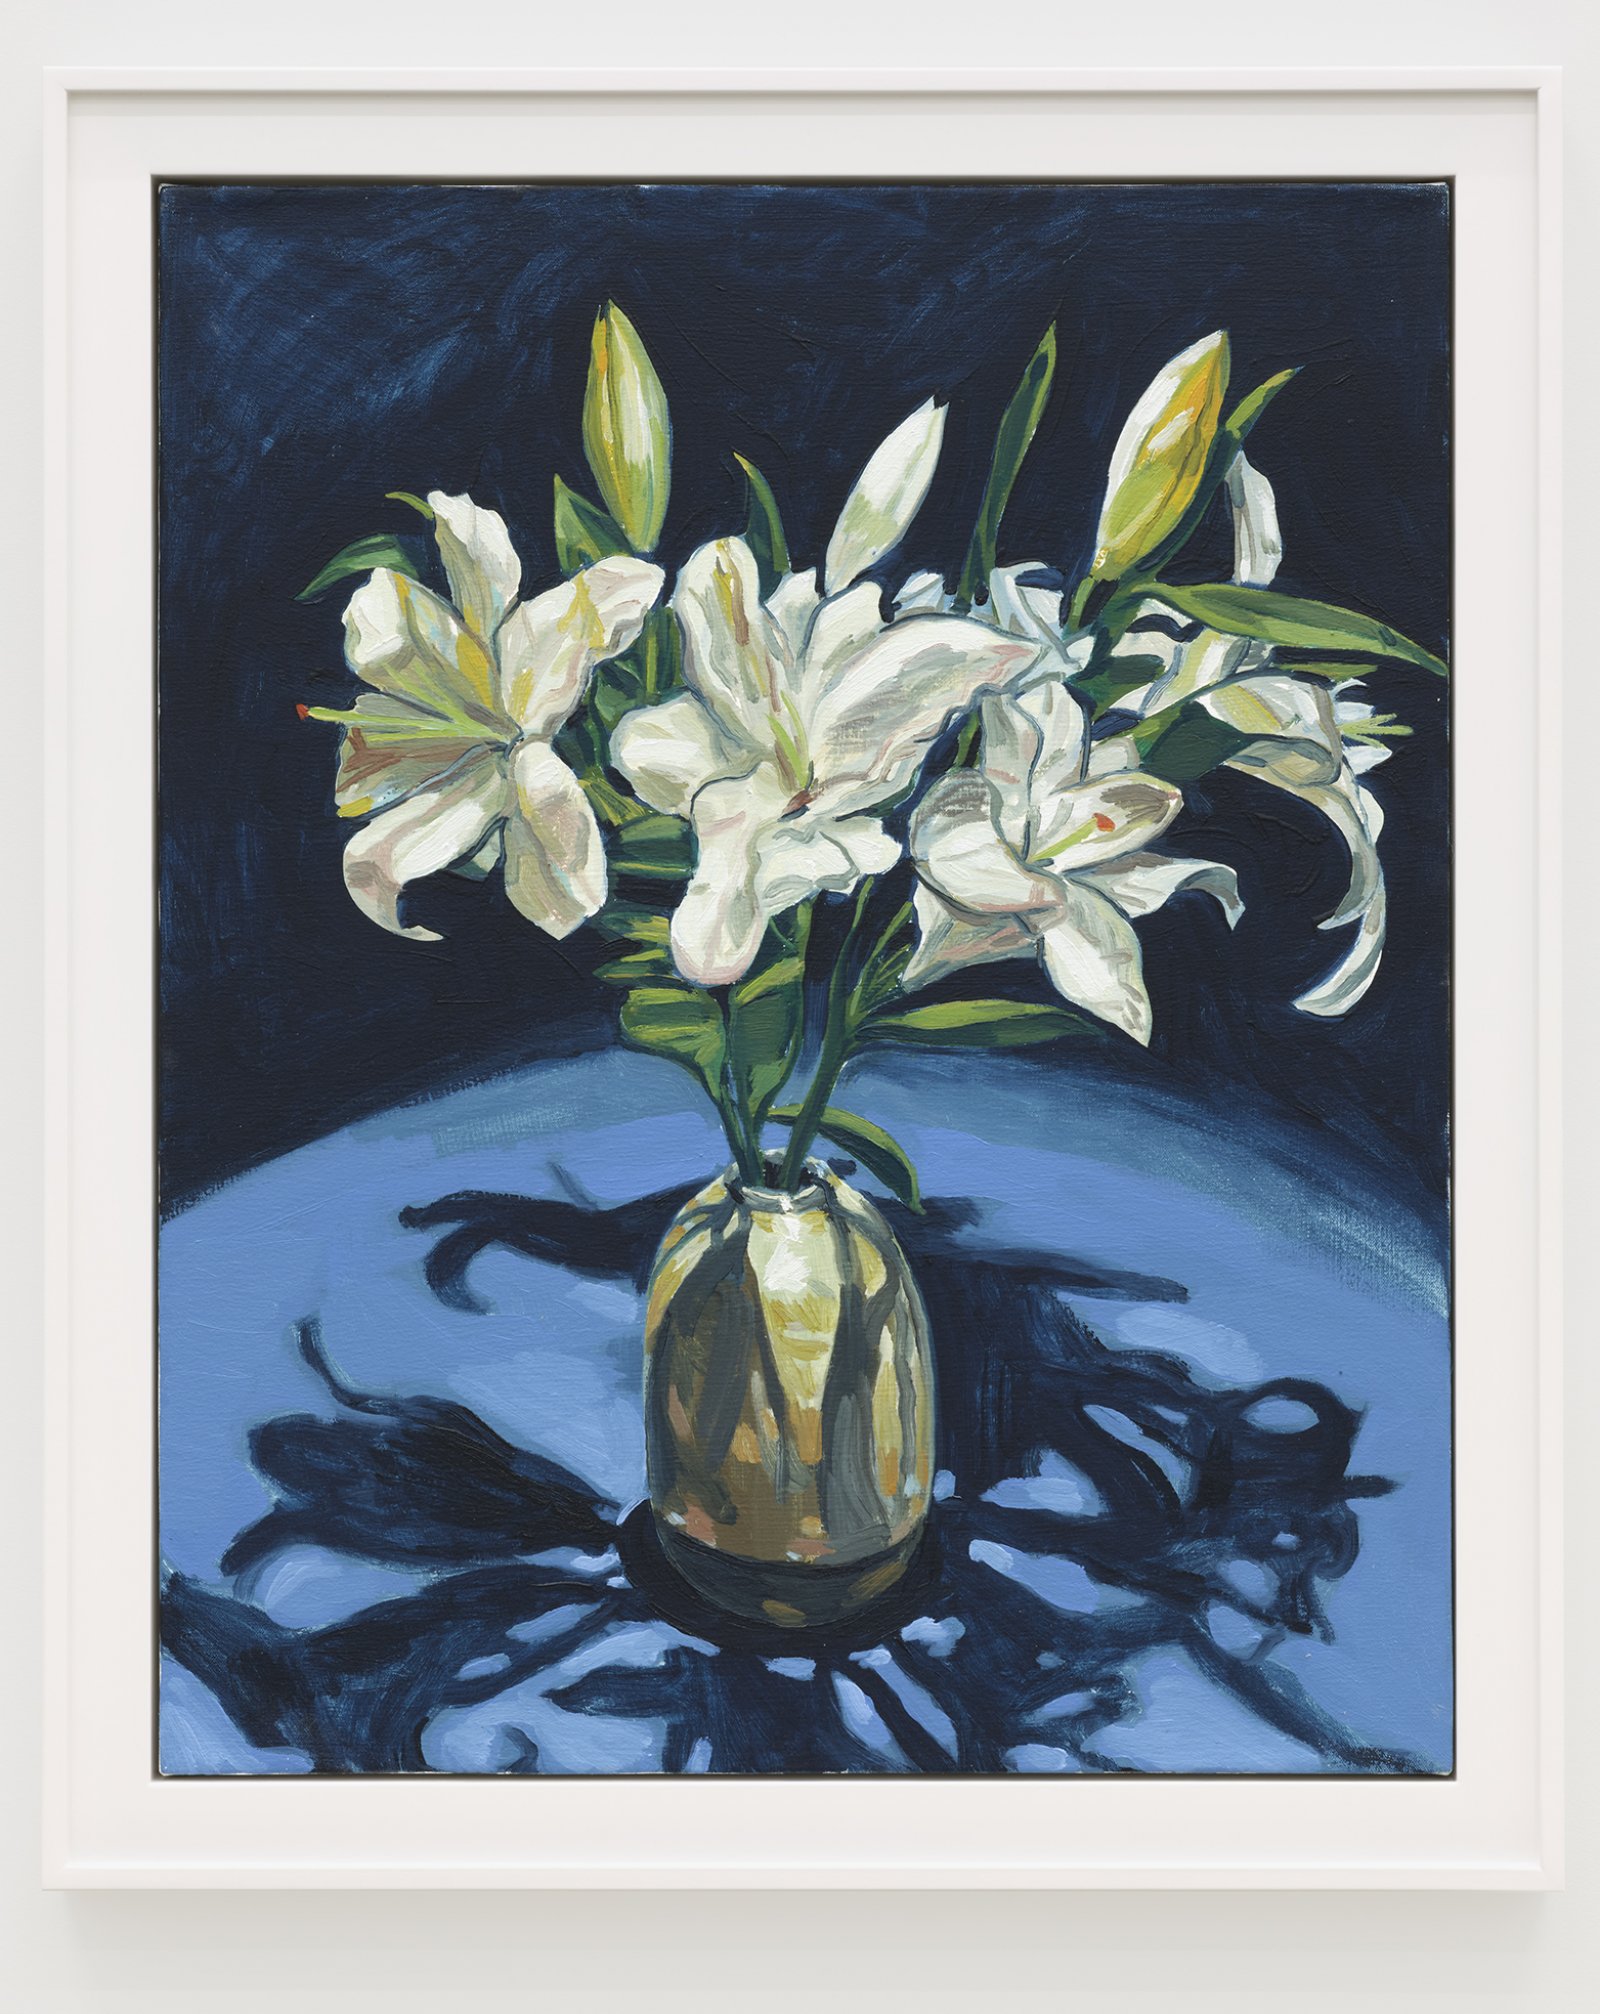 Damian Moppett, Lilies (Indigo), 2020, oil on canvas, 32 x 27 in. (82 x 69 cm) by Damian Moppett